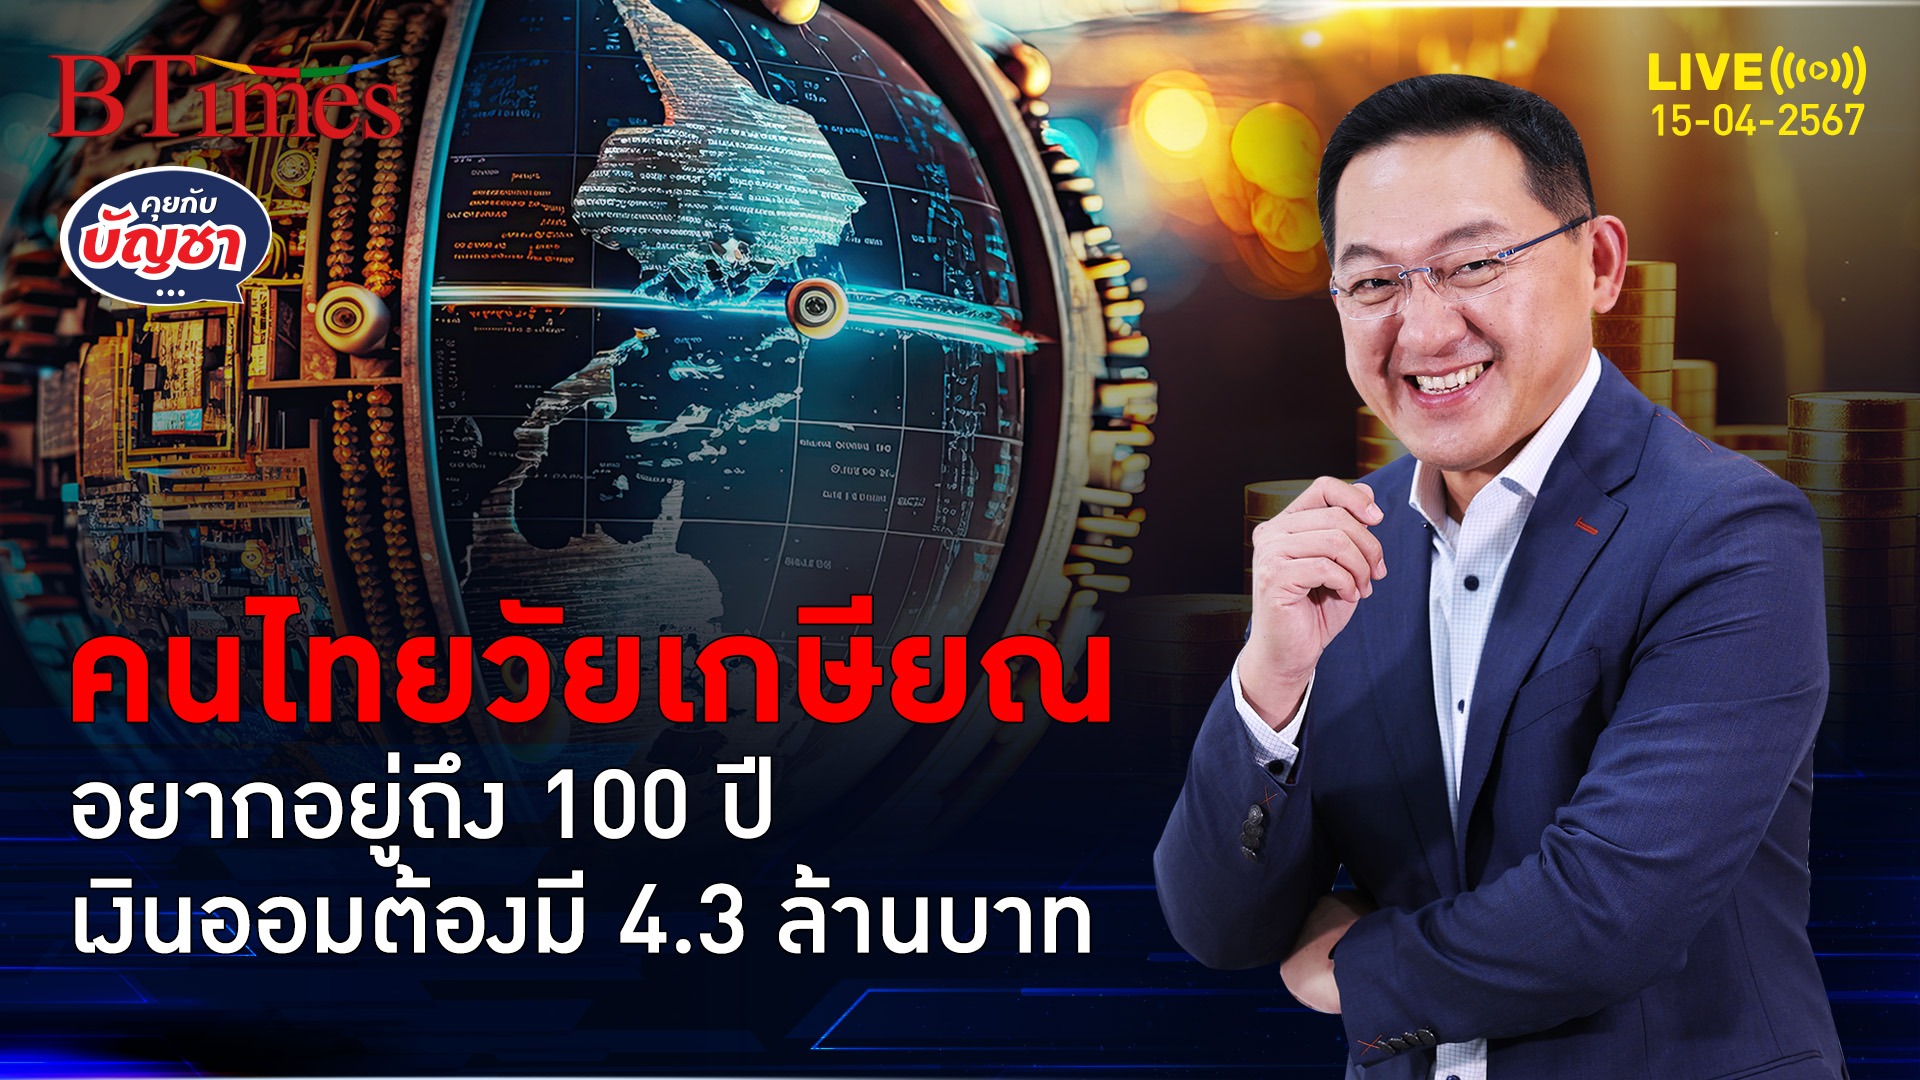 เจนคนไทยหลังเกษียณ อยากอยู่ถึง 100 ปี ต้องออมเงินให้ได้ 4.3 ล้านบาท | คุยกับบัญชา l 15 เม.ย. 67